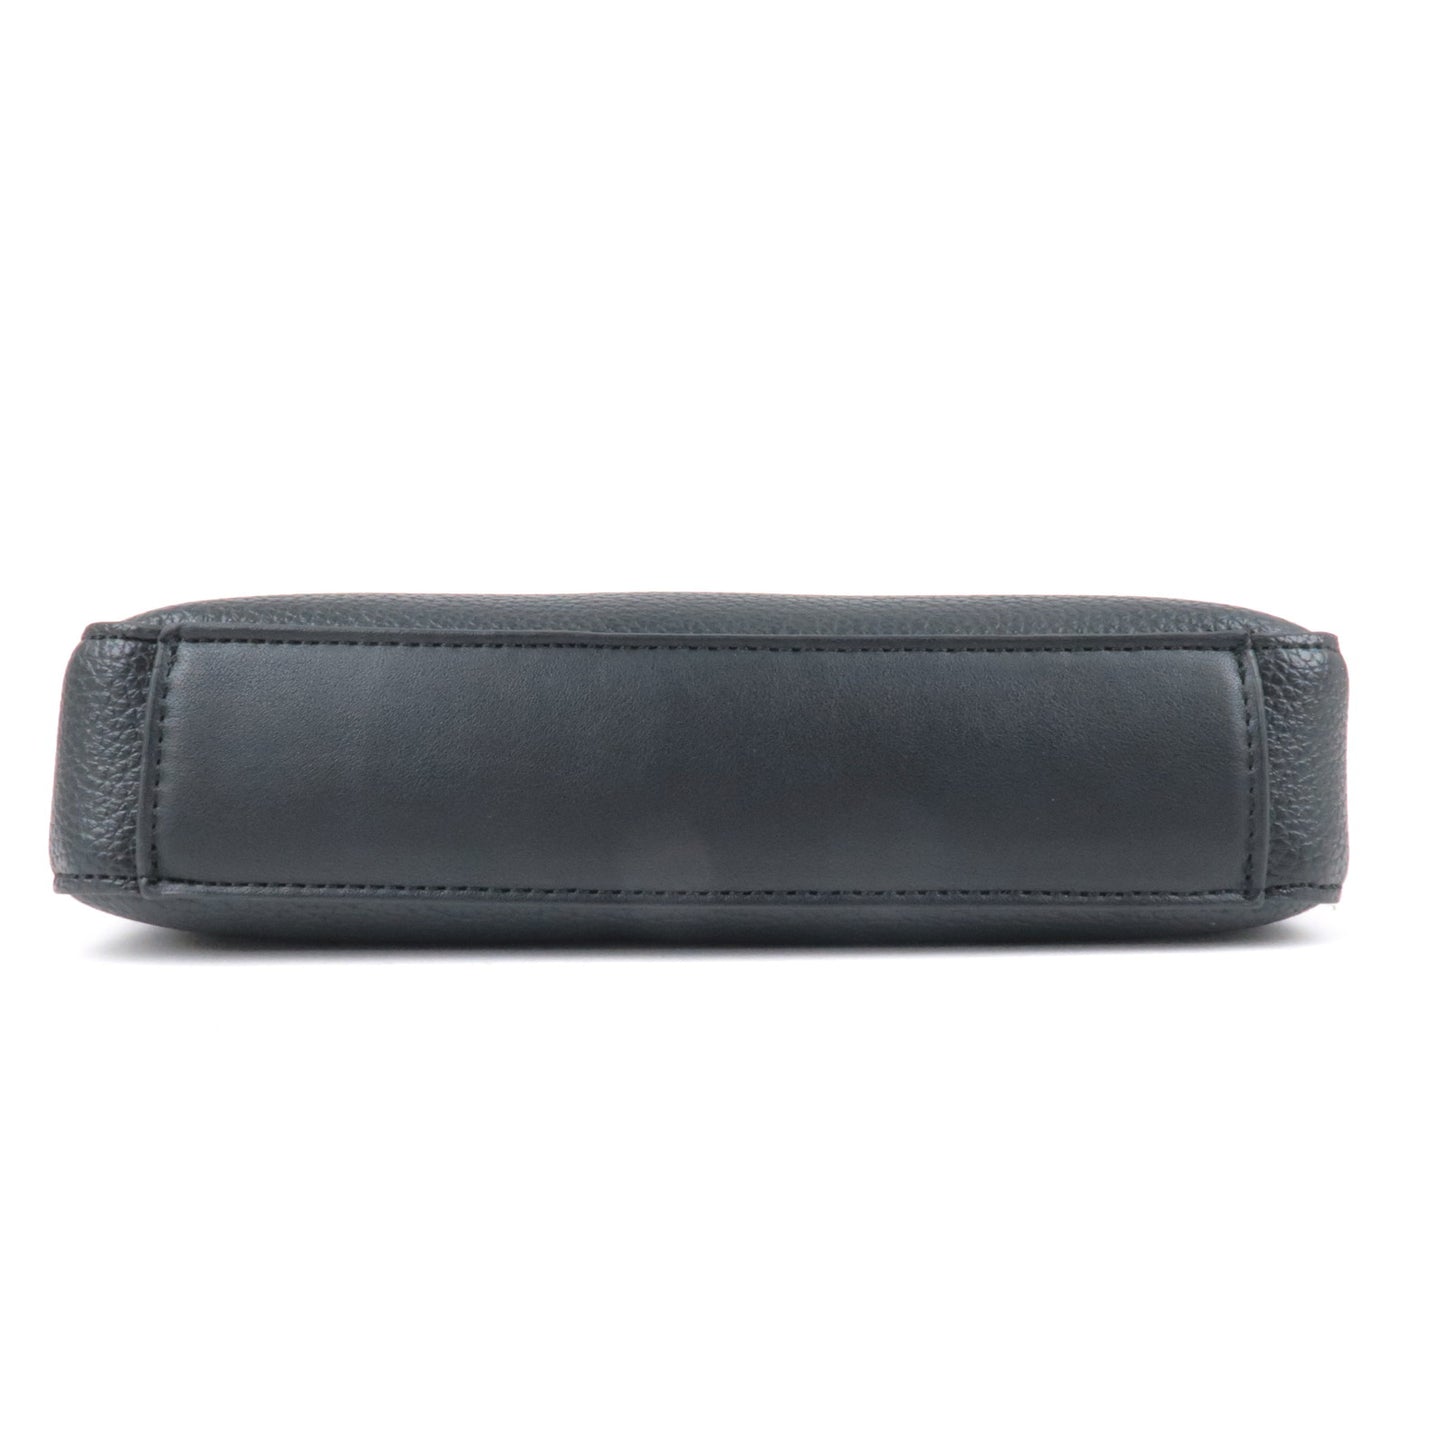 Mario Valentino Leather 2 Way Shoulder Bag Hand Bag Purse Black